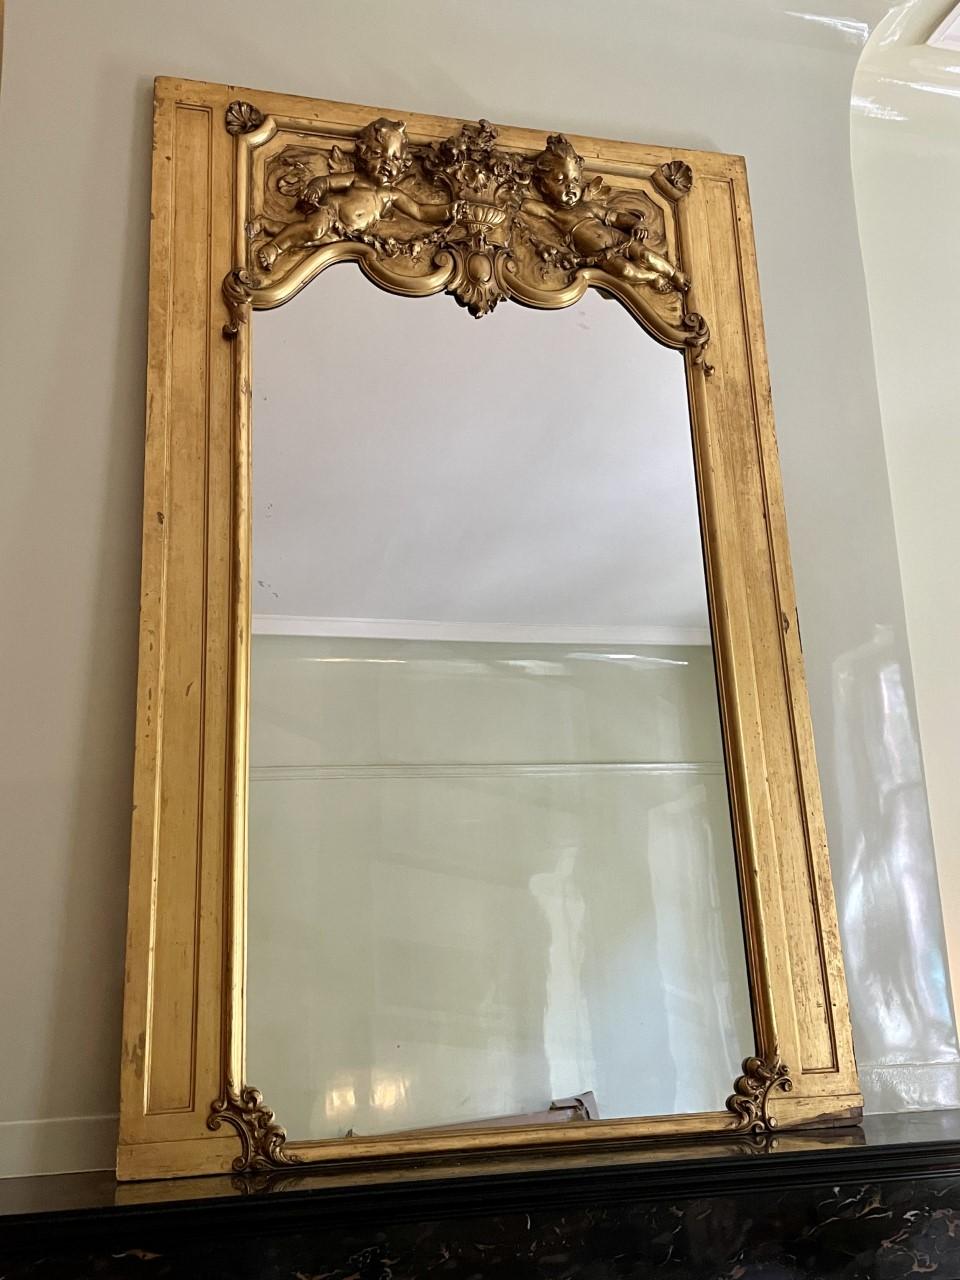 Rococo Revival 19th Century Glided Cherub Mirror For Sale